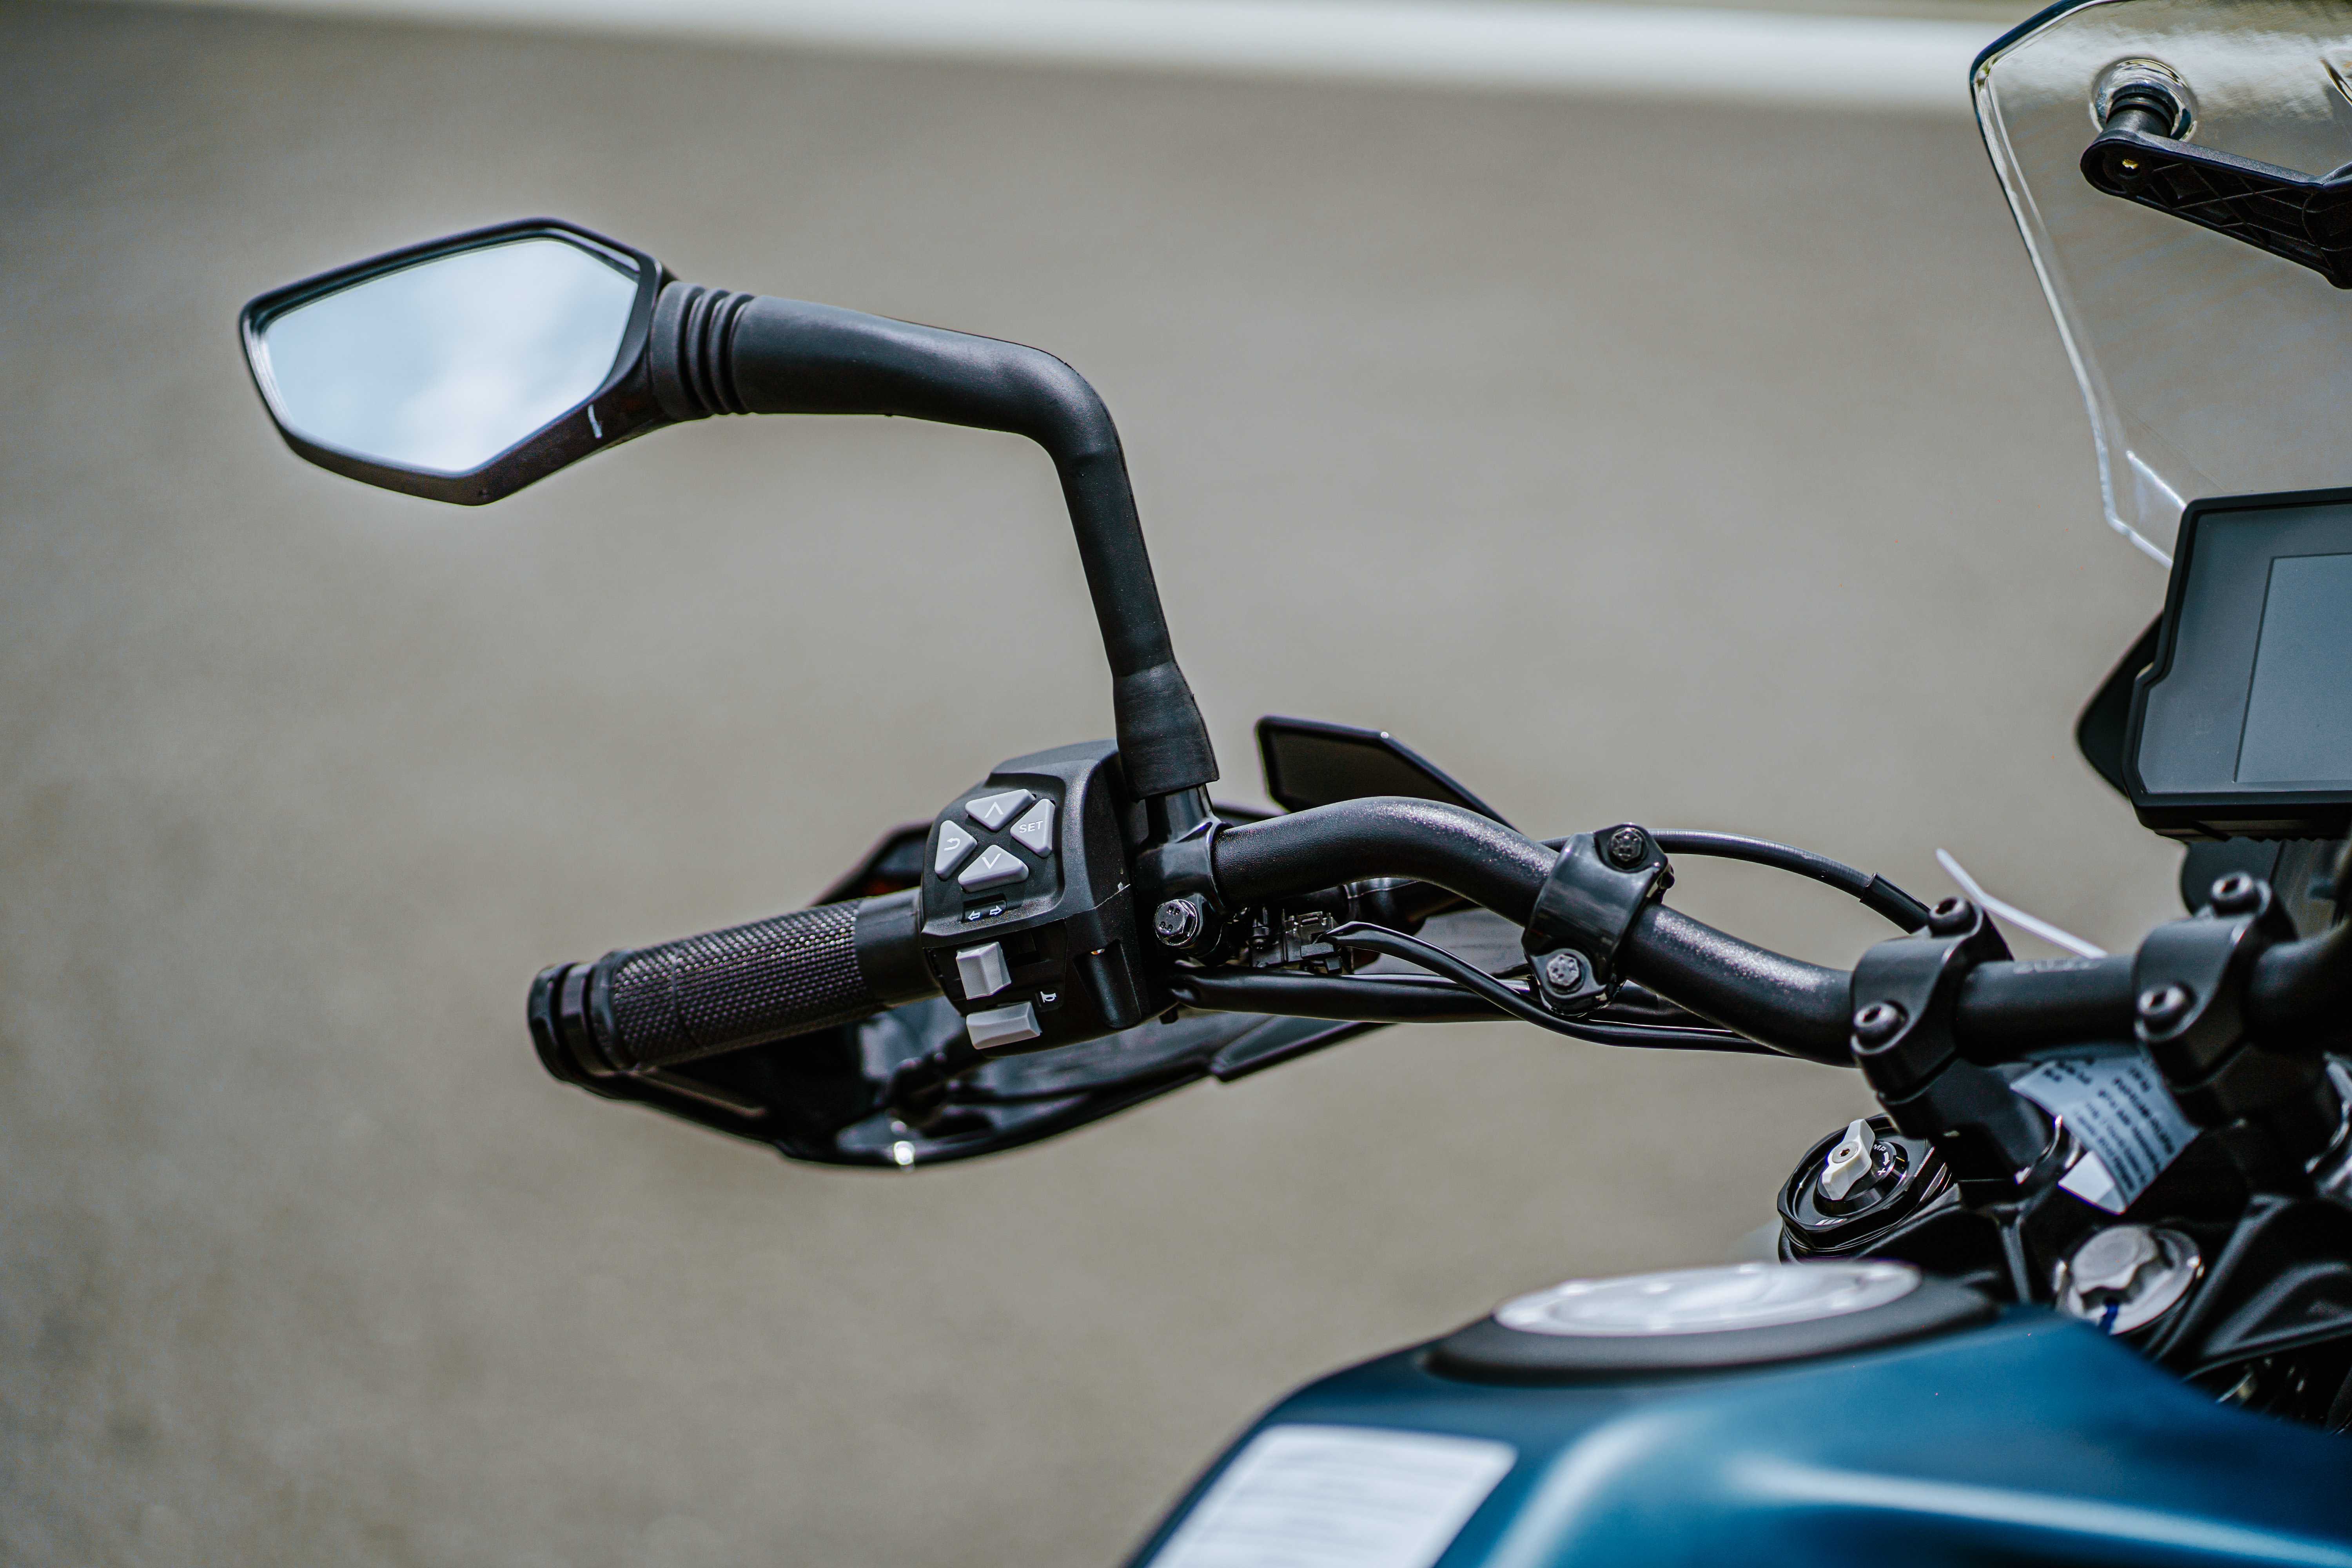 Giá bán hơn 230 triệu đồng, KTM 390 Adventure 2022 có gì đặc biệt? Bộ nút điều khiển tiện lợi.jpg